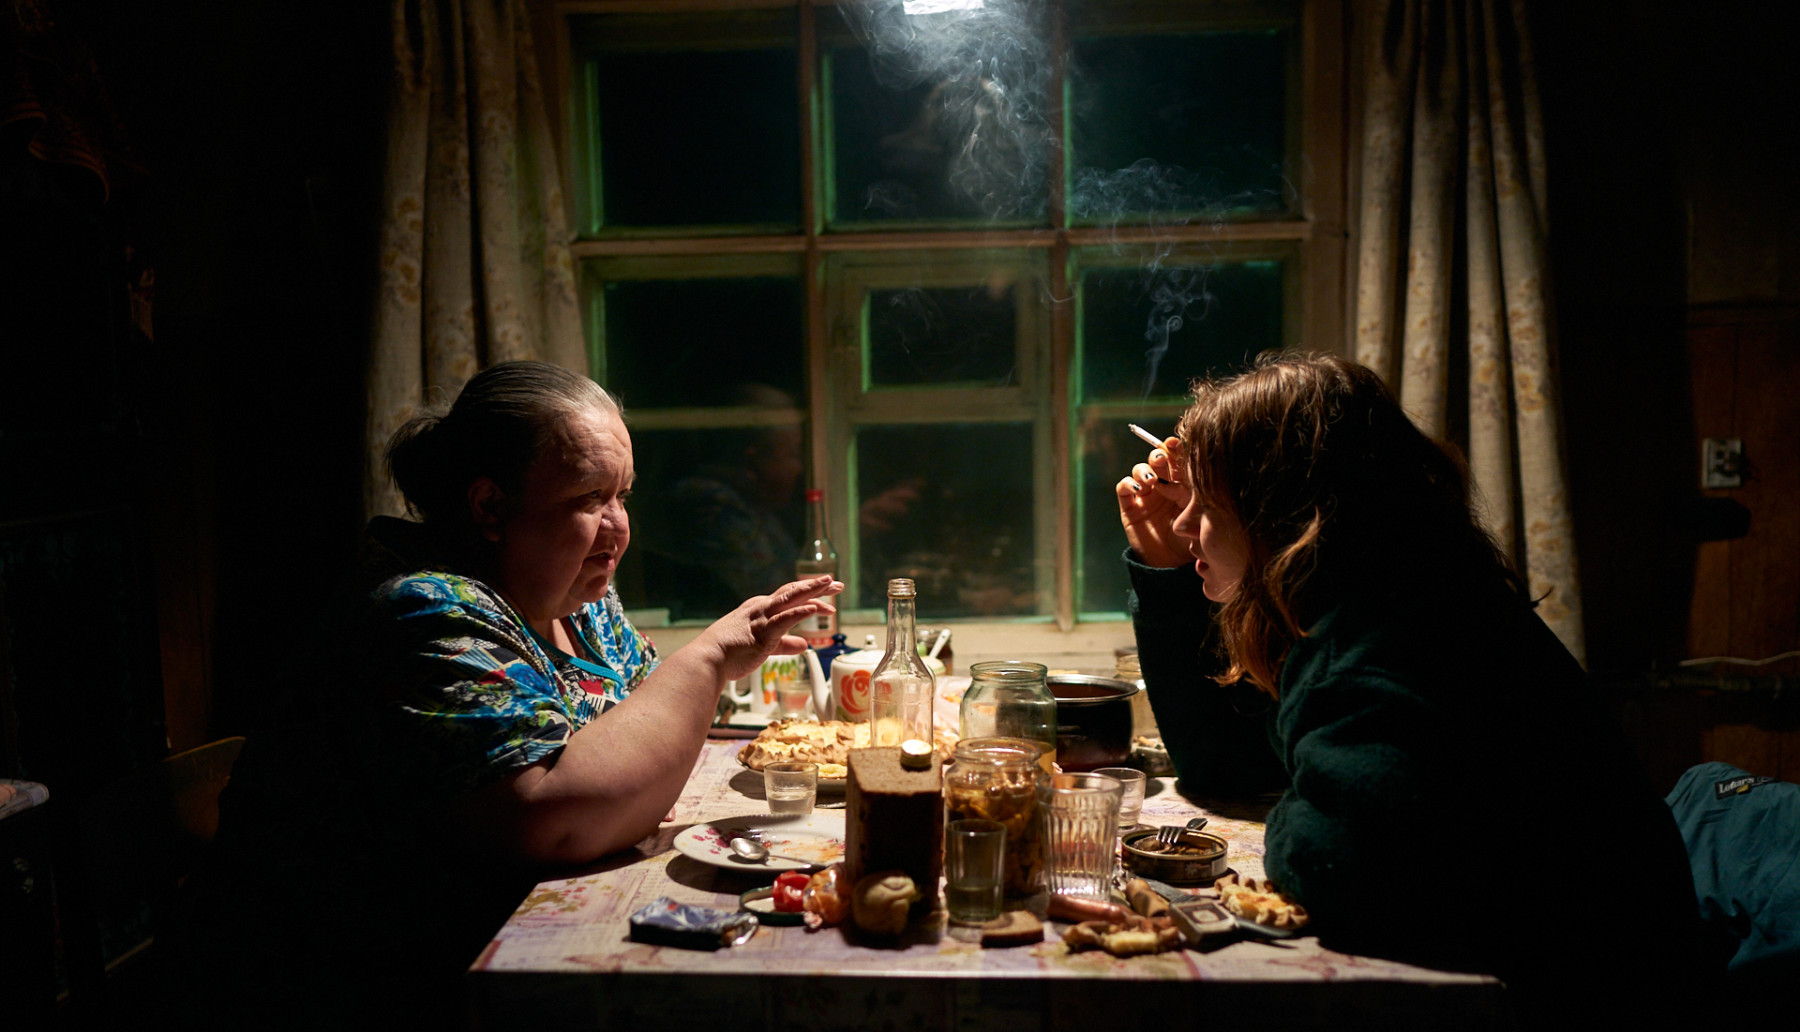 امرأة مسنة وأخرى شابة تجلسان على طاولة المطبخ، تشربان وتدخنان وتتسامران.